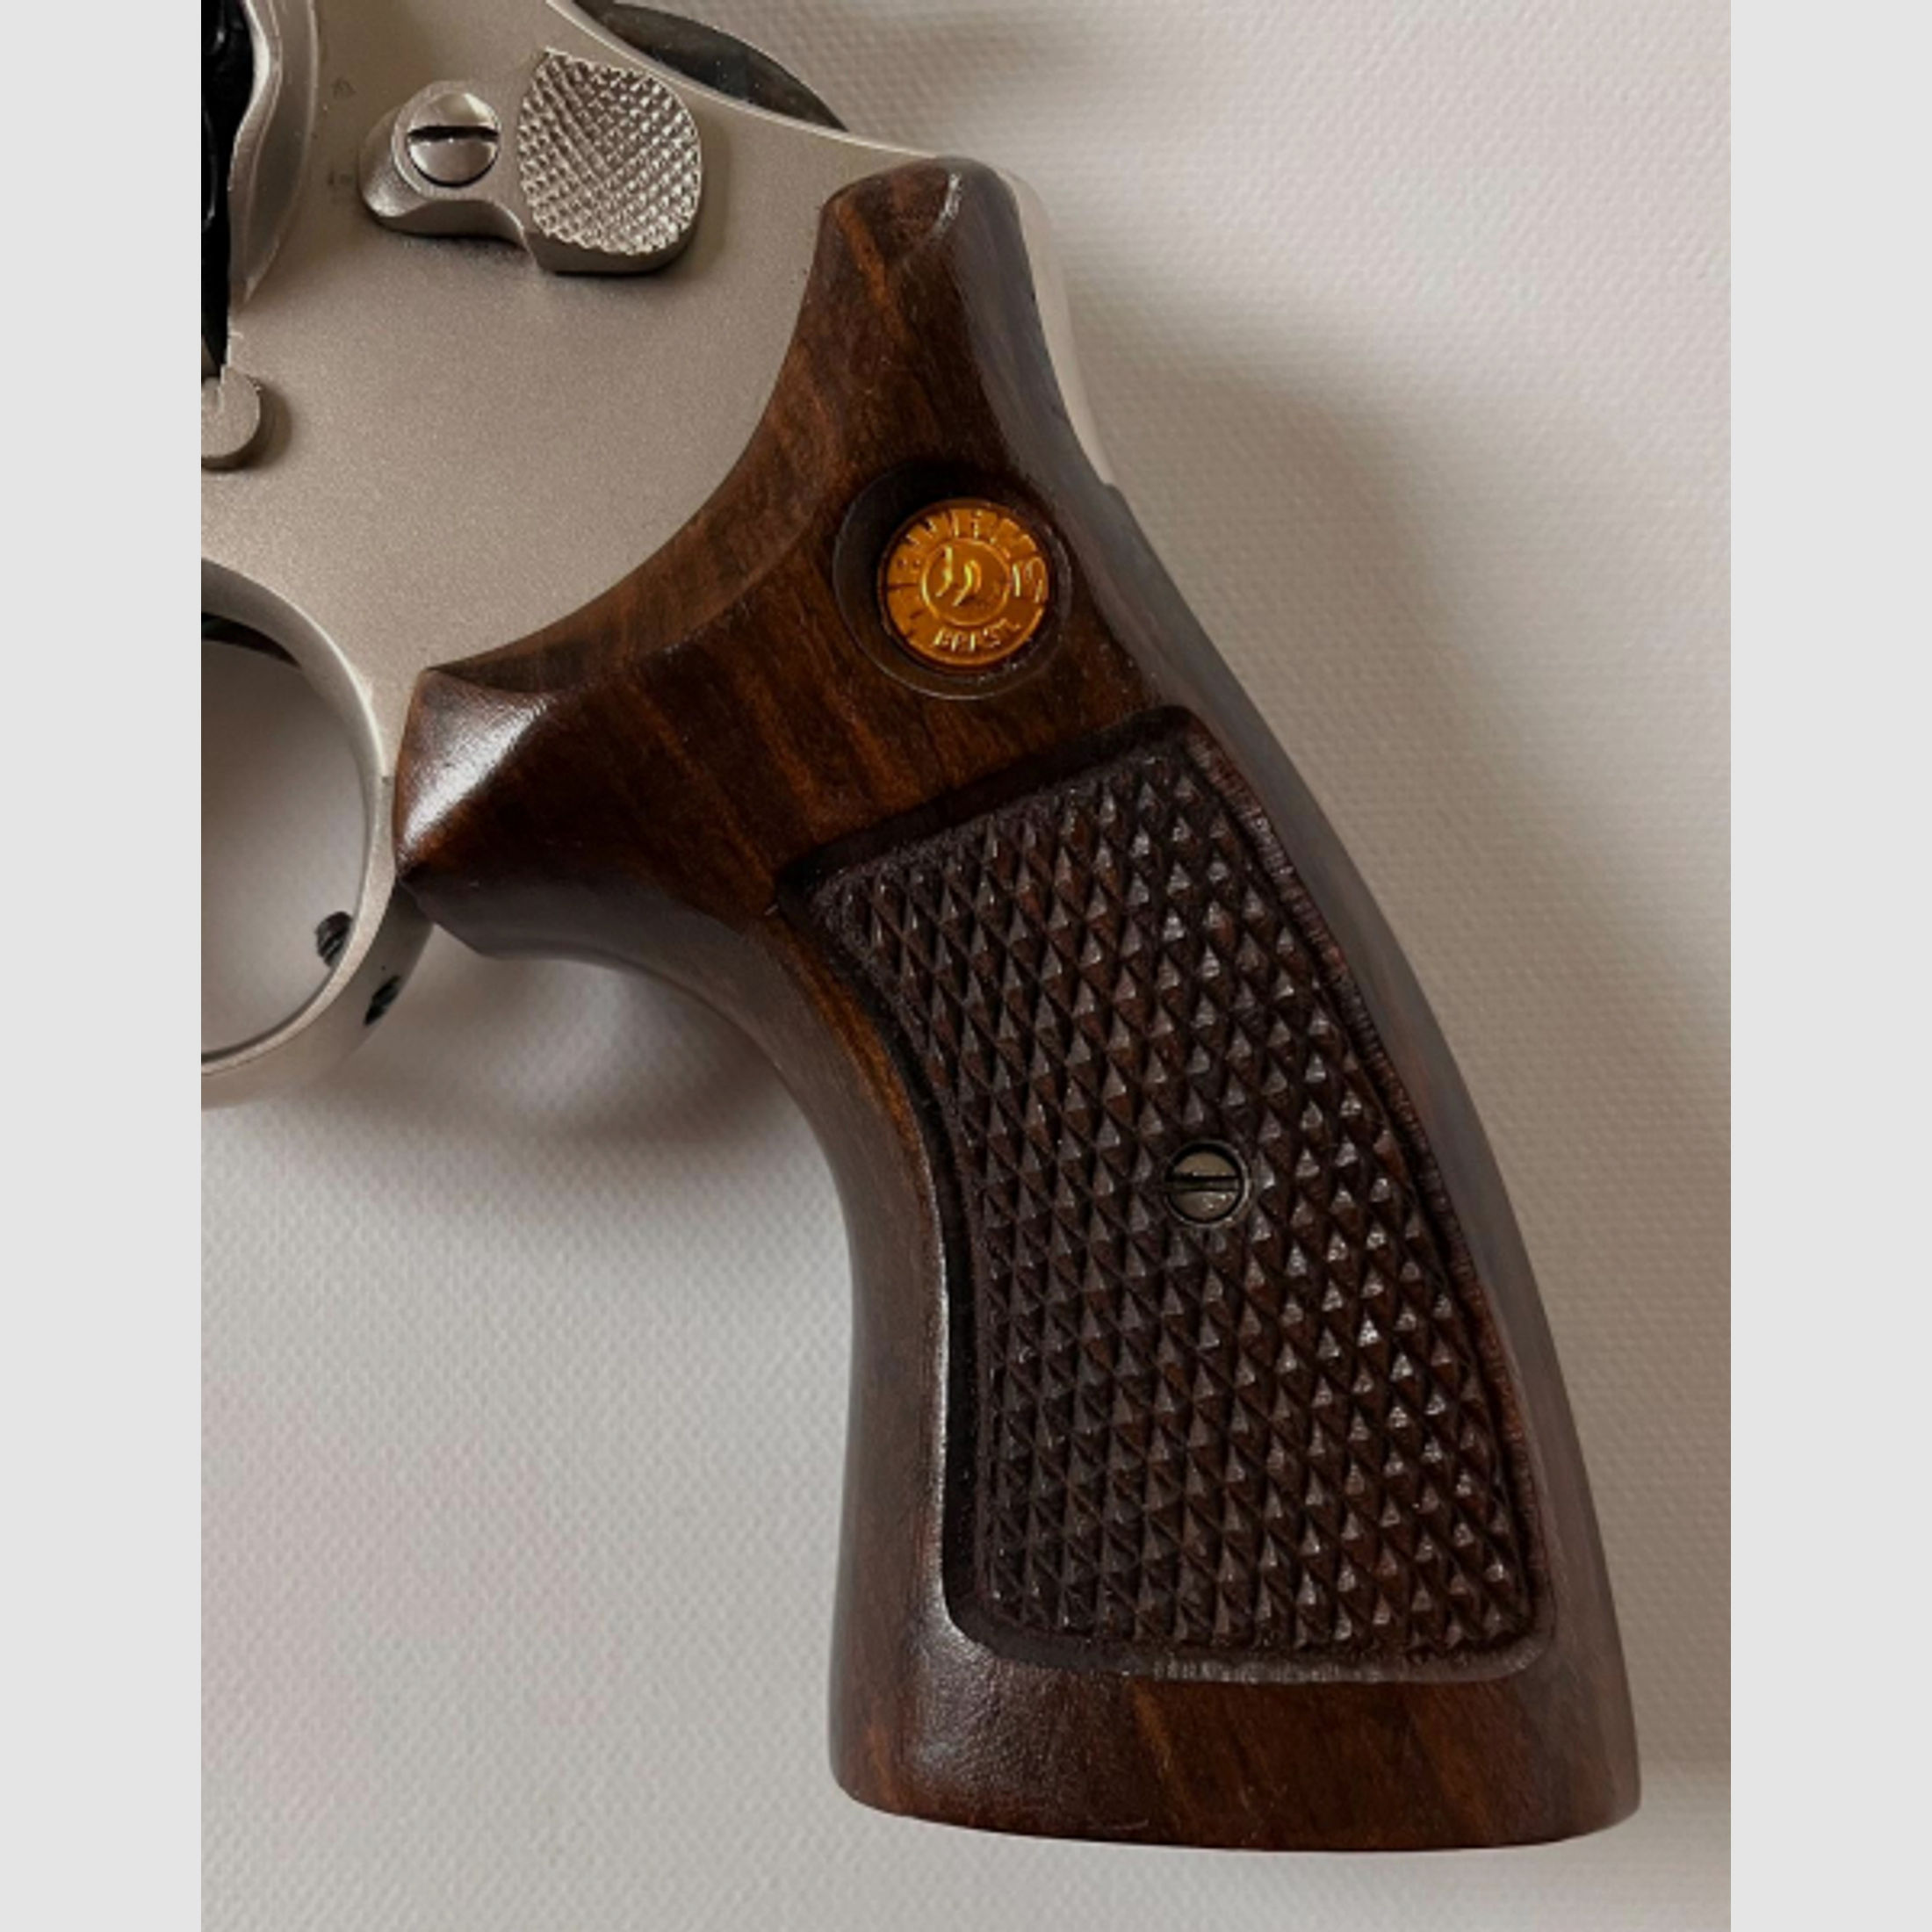 Revolver .357 Mag. Hämmerli Taurus Brasil II